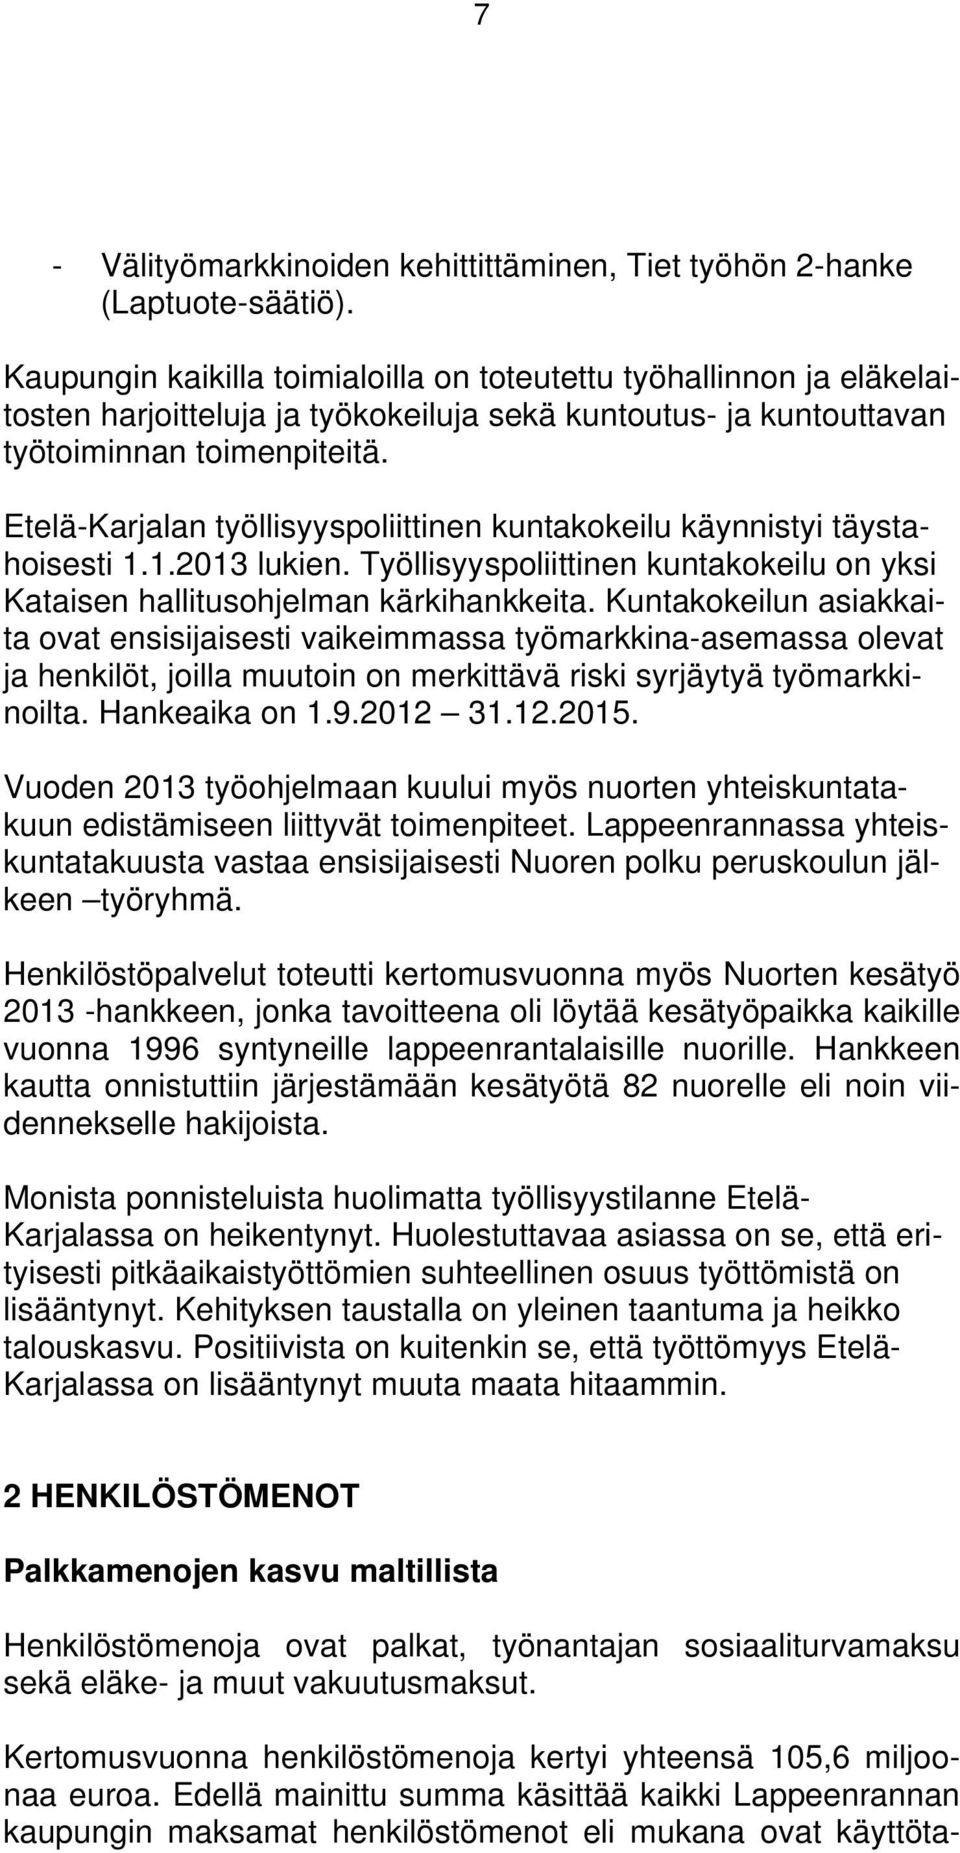 Etelä-Karjalan työllisyyspoliittinen kuntakokeilu käynnistyi täystahoisesti 1.1.2013 lukien. Työllisyyspoliittinen kuntakokeilu on yksi Kataisen hallitusohjelman kärkihankkeita.